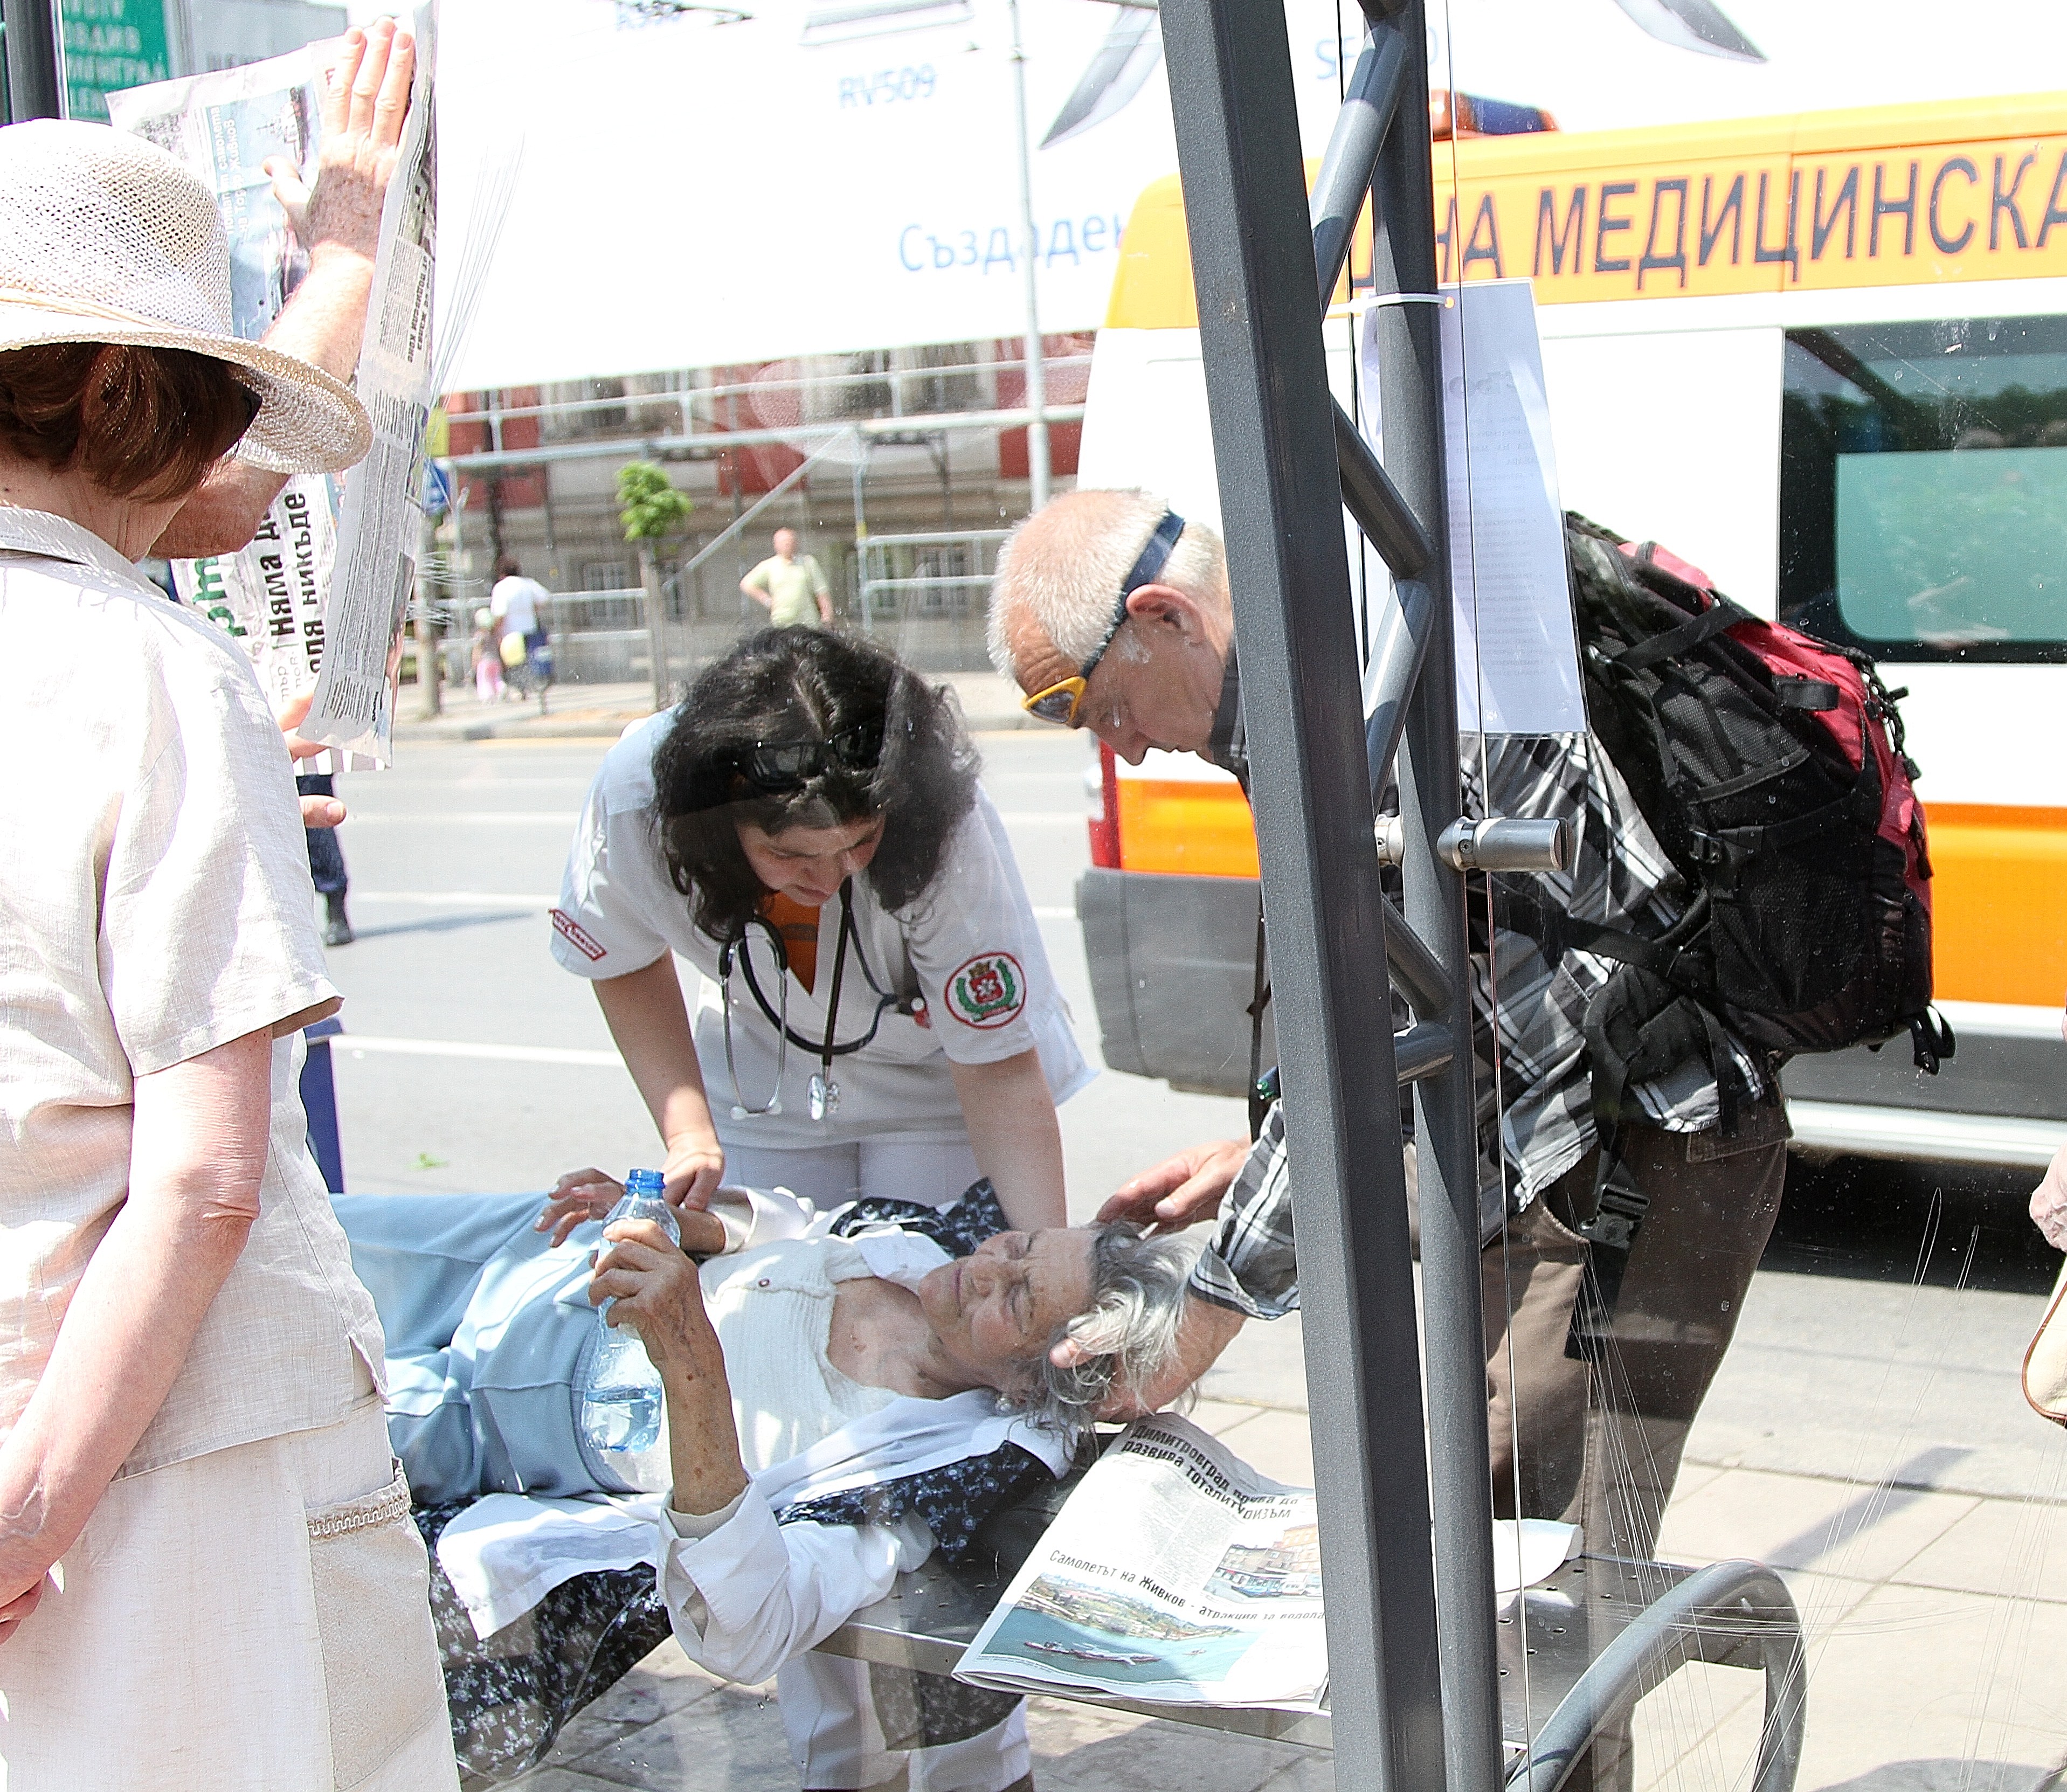 Възрастна жена припадна по време на тържествата в София